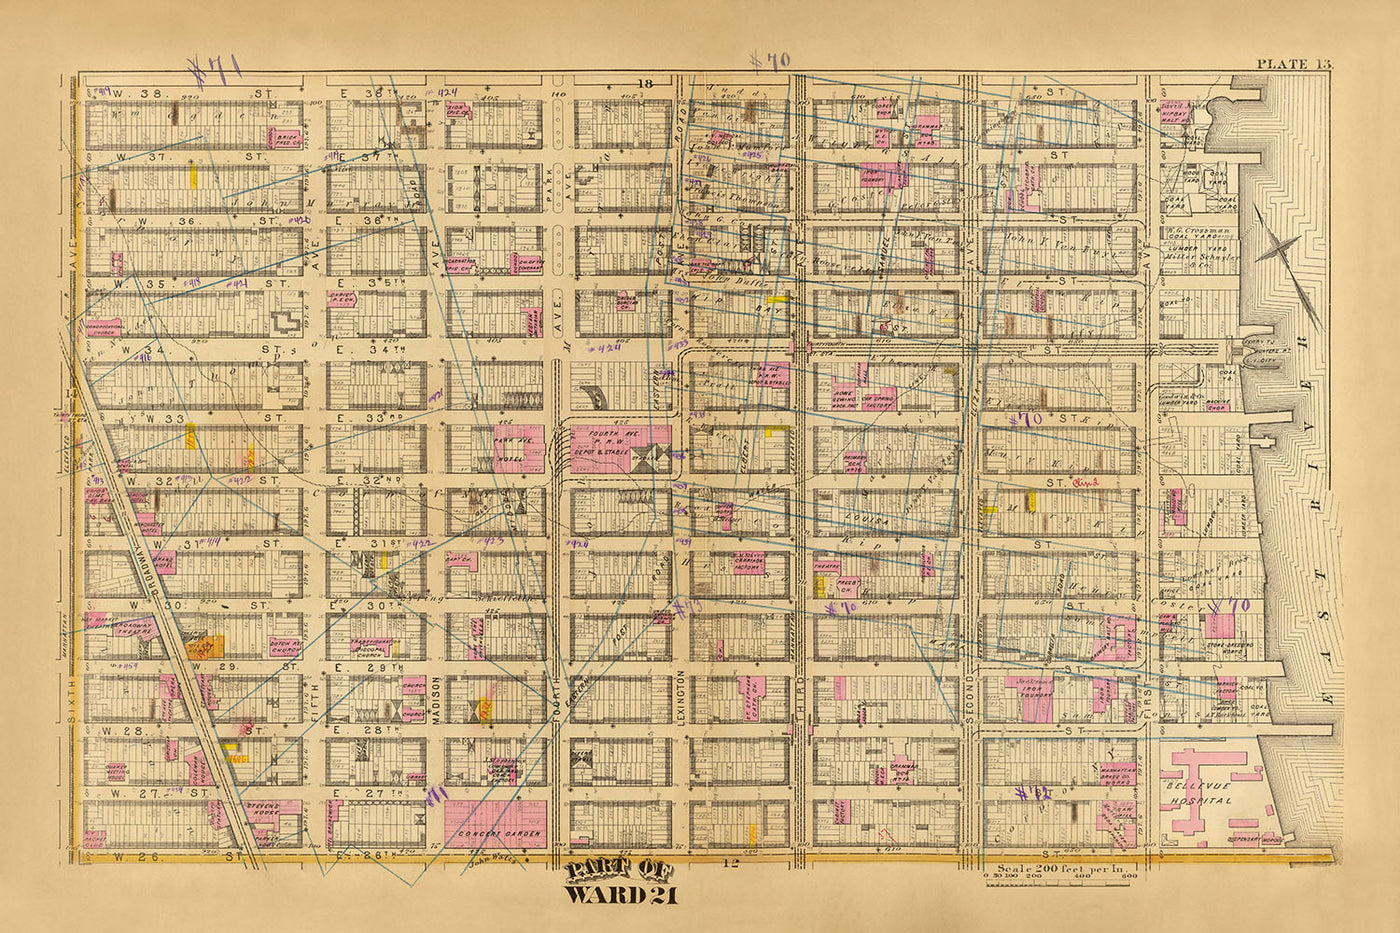 Mapa antiguo del distrito 21, Nueva York, de Bromley, 1879: Bellevue Hospital, Concert Garden y 33rd Street Station.